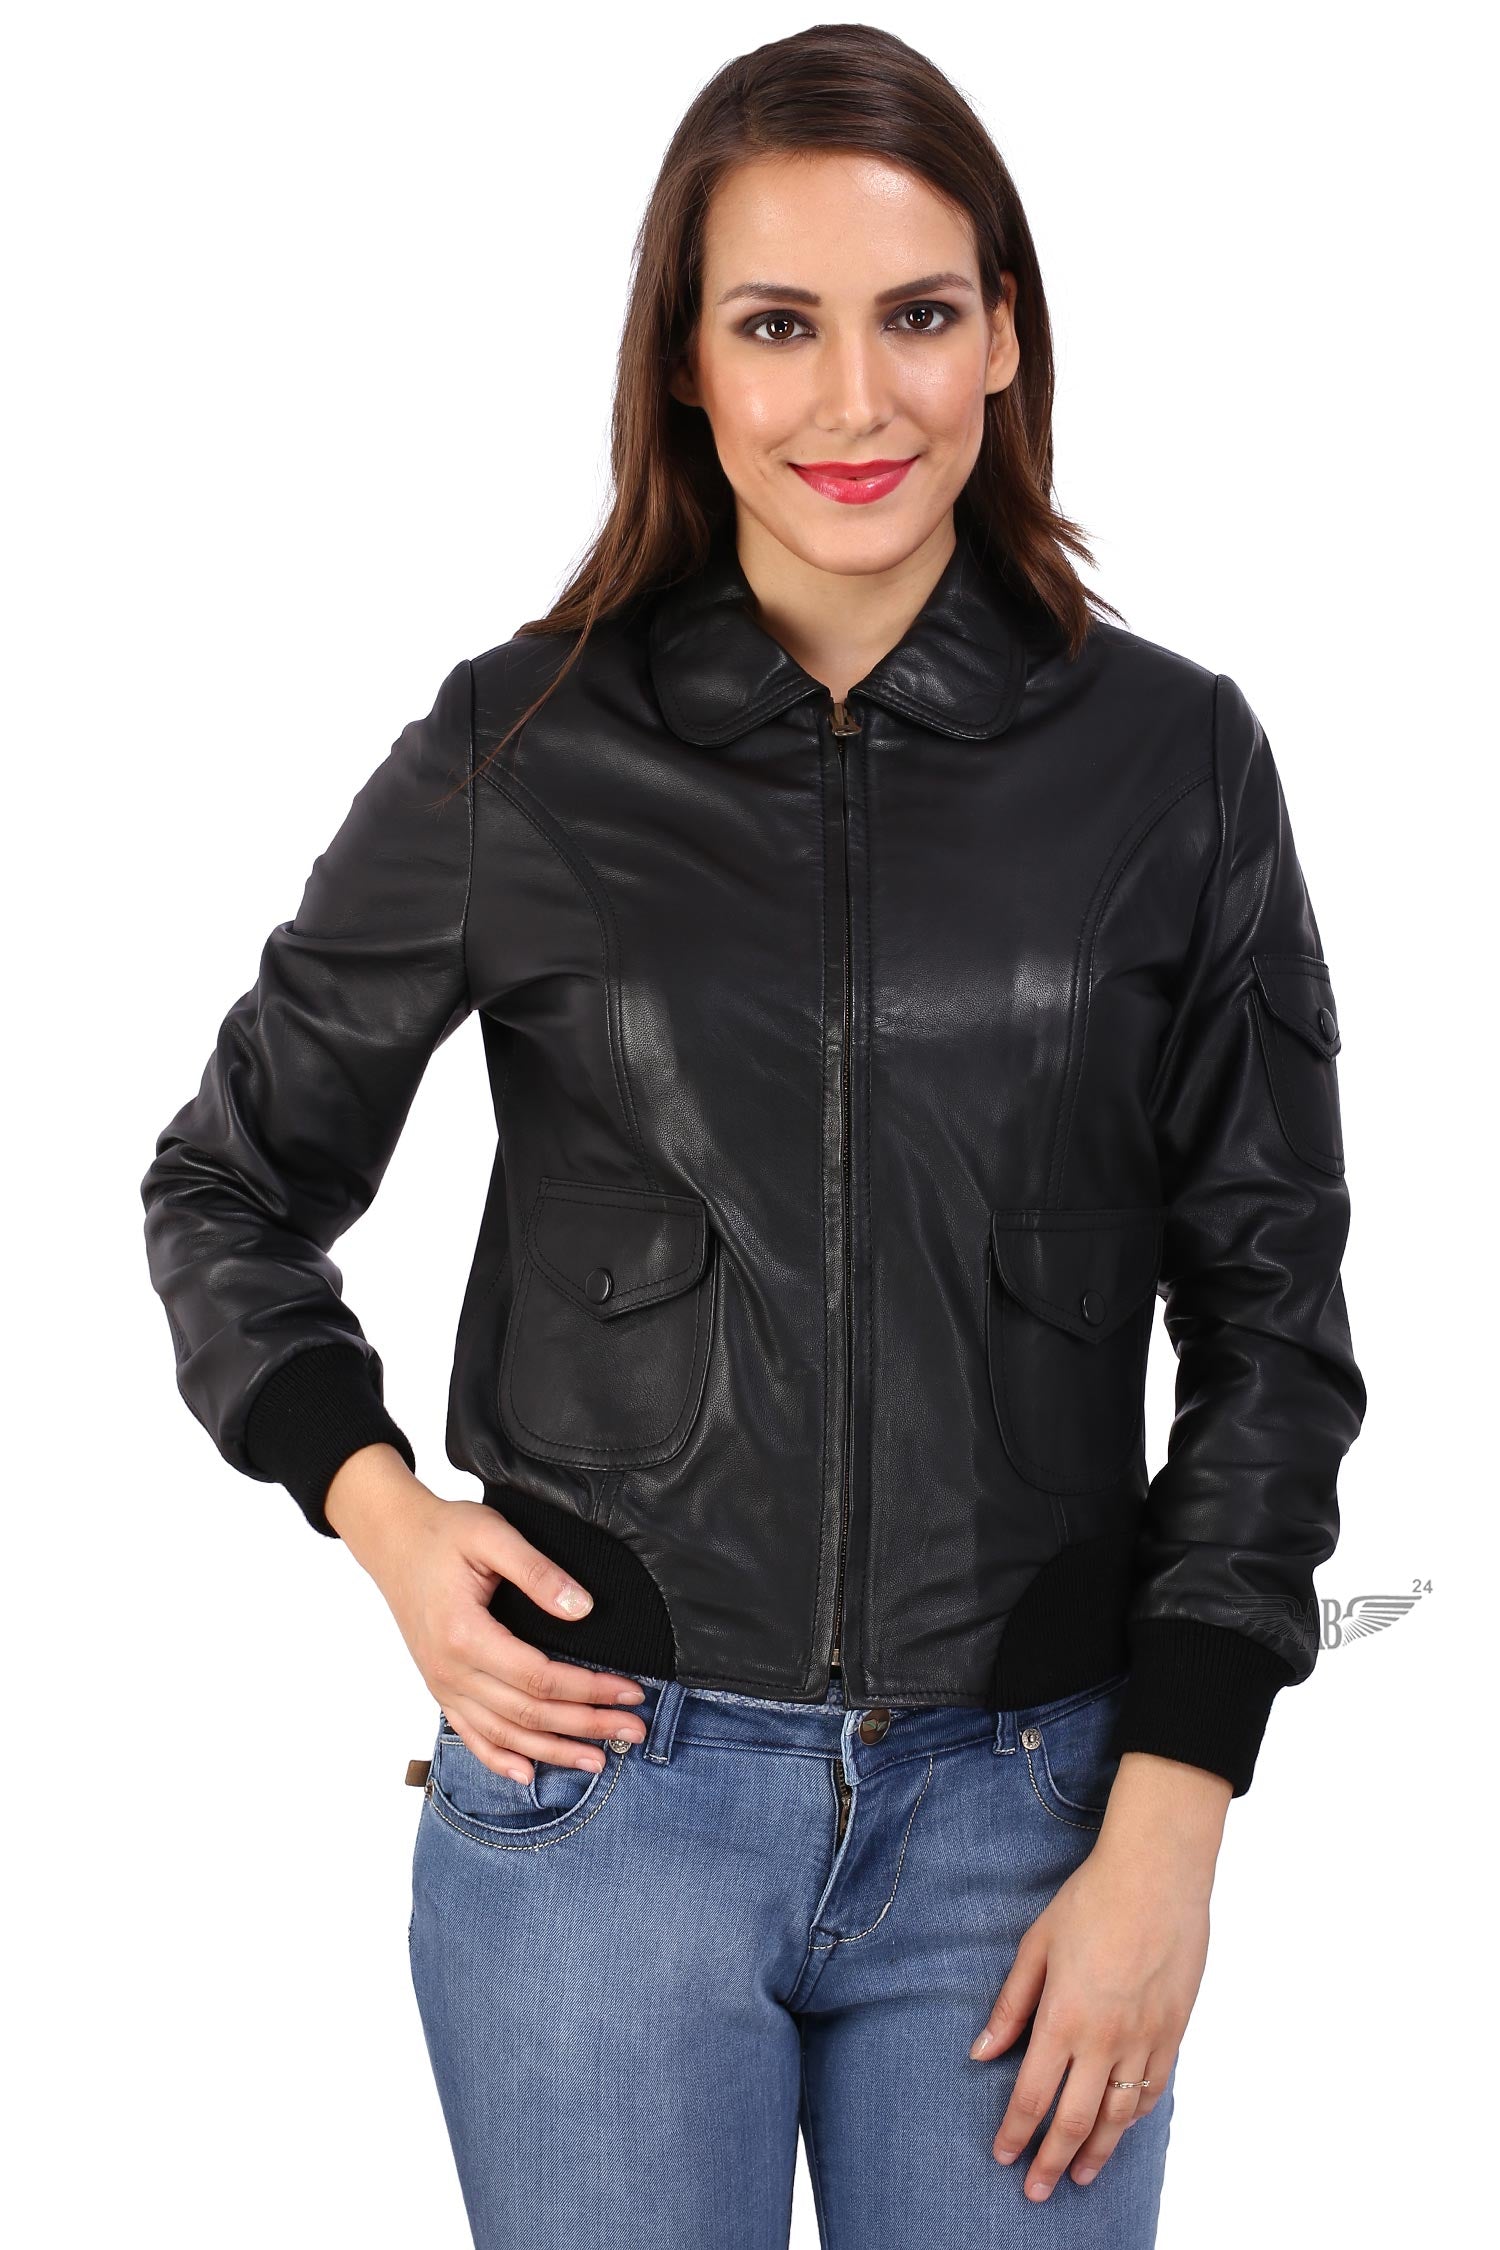 black leather Womens bomber jacket